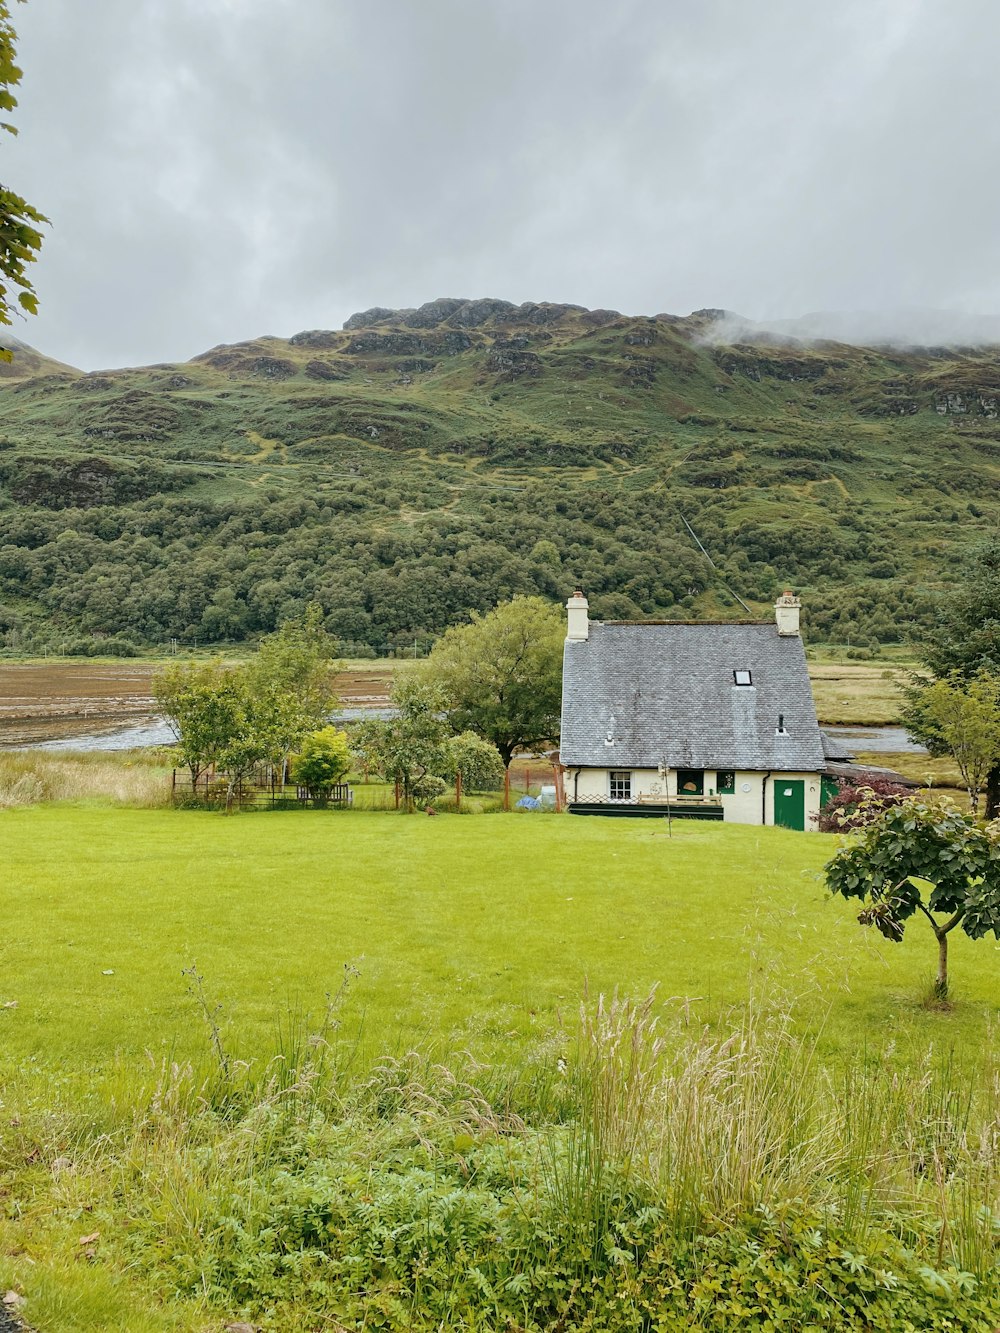 Maison grise et blanche sur un champ d’herbe verte près de la montagne pendant la journée